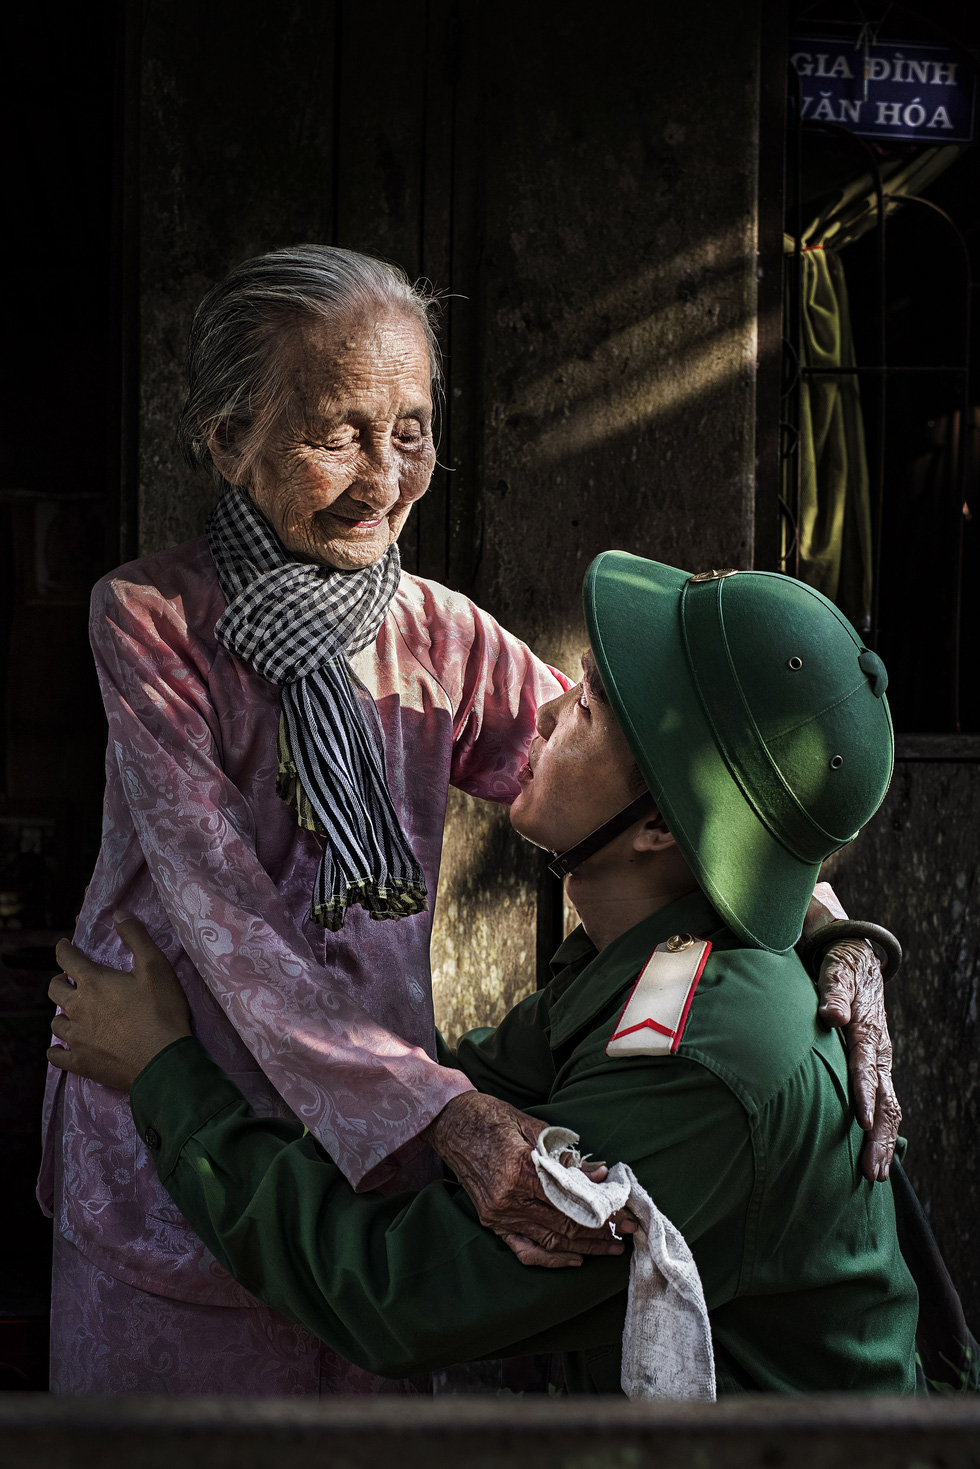 Ngắm những khoảnh khắc yêu thương gia đình ở khắp nẻo Việt Nam - Ảnh 7.